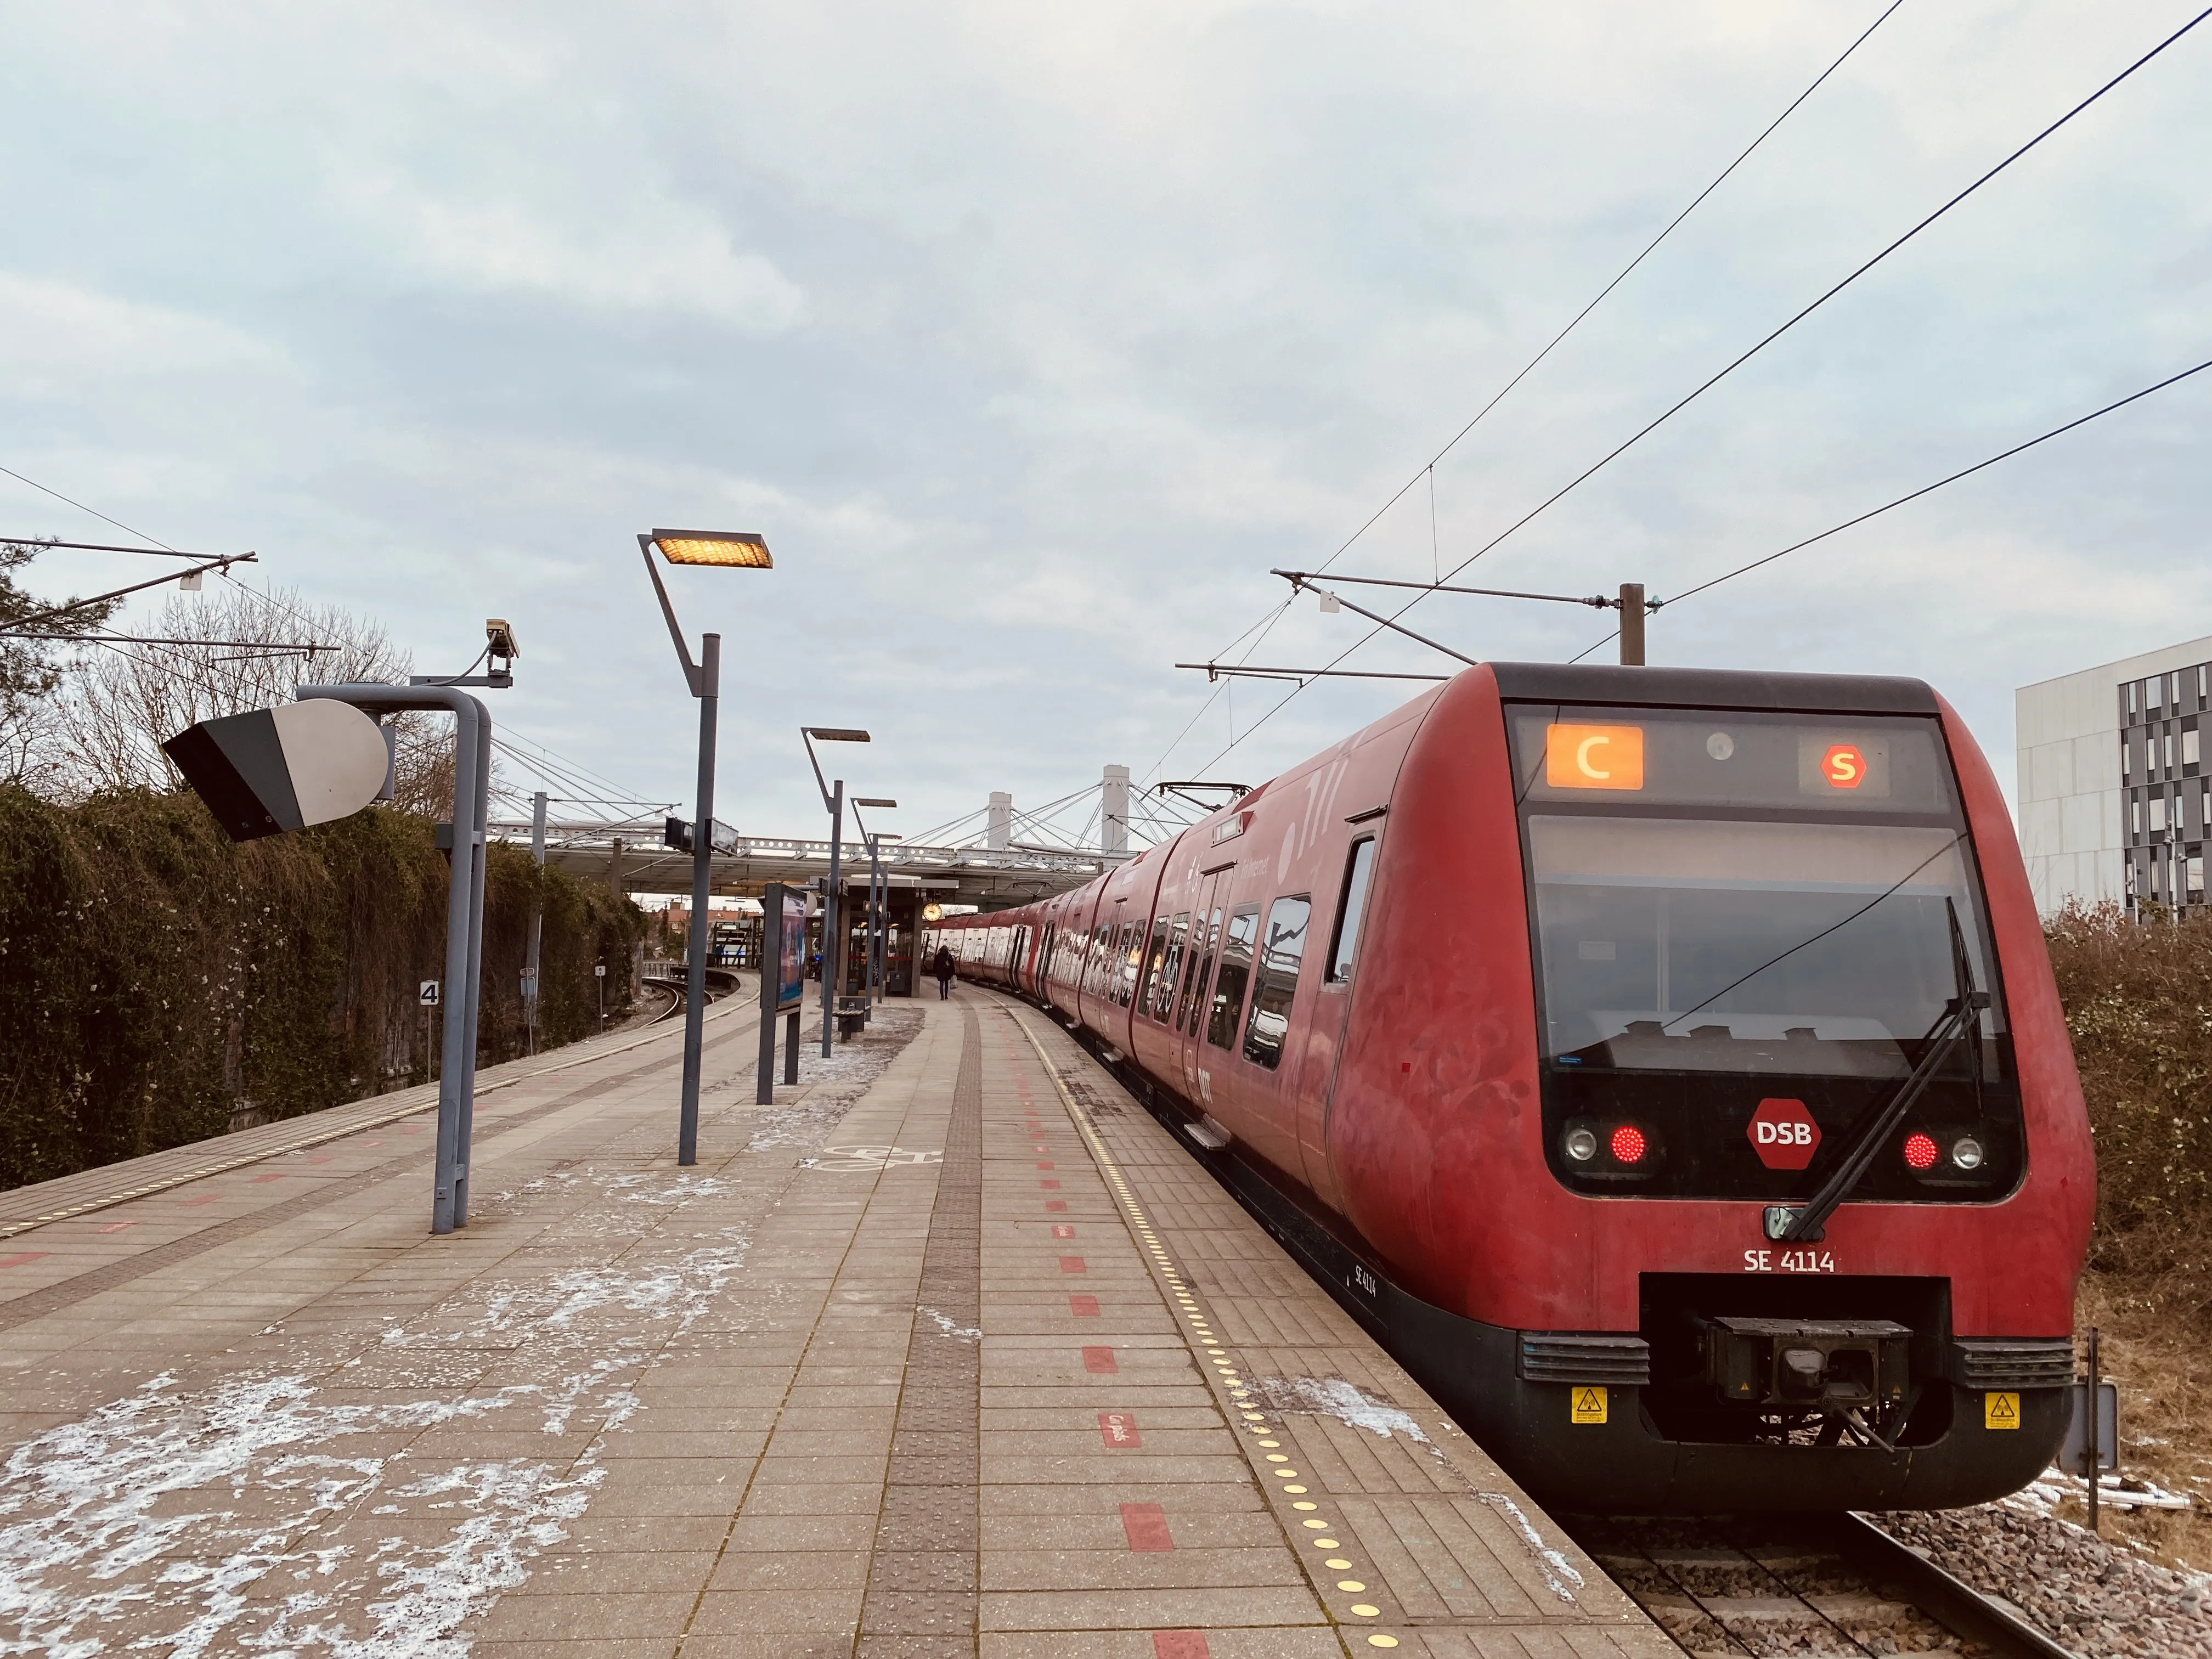 Billede af DSB SE 4114 fotograferet ud for Flintholm Station.